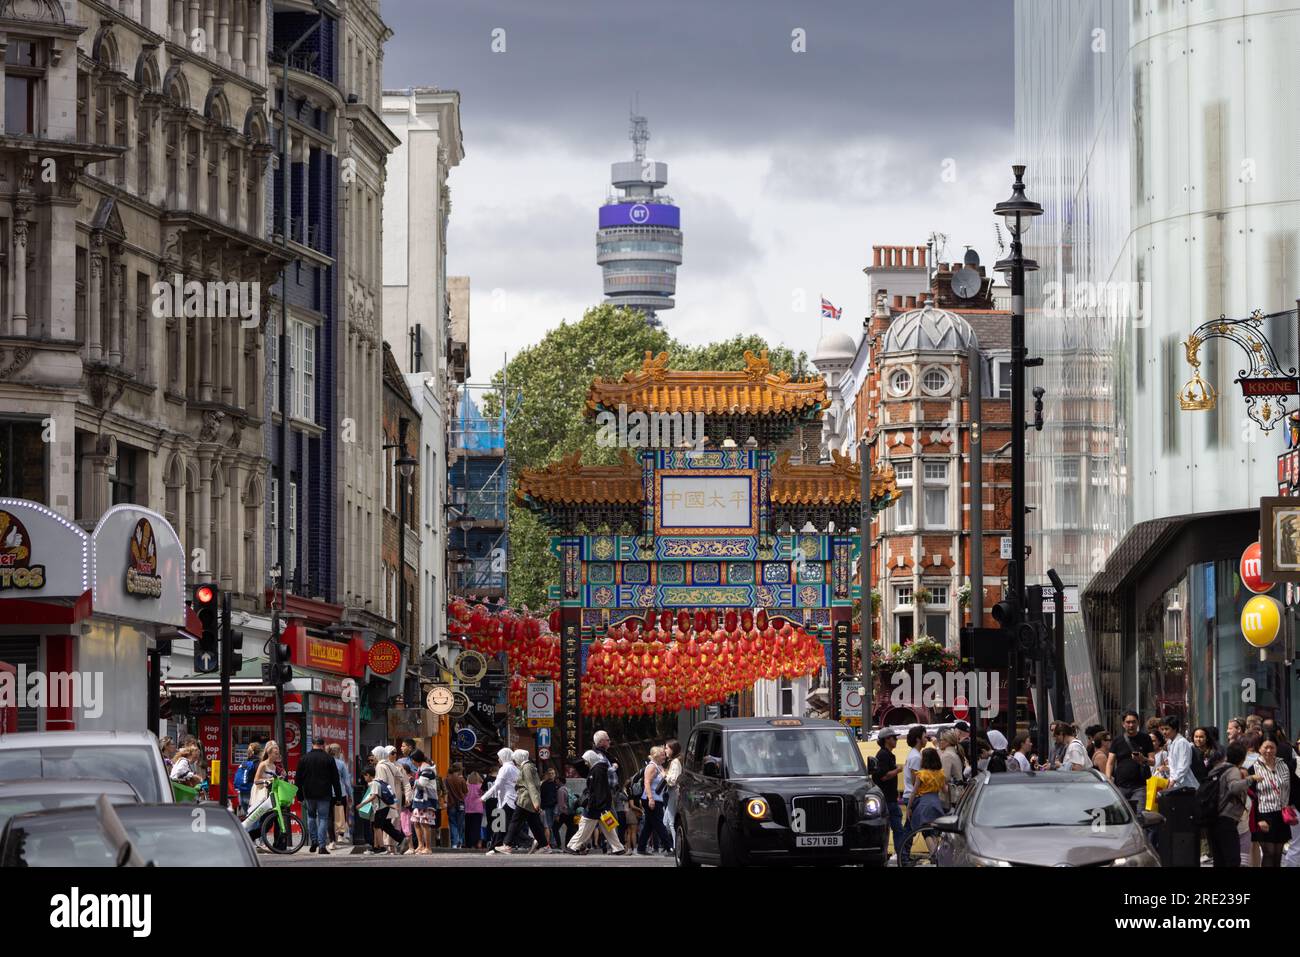 Tour BT vue au loin derrière China Town, centre de Londres, Angleterre, Royaume-Uni Banque D'Images